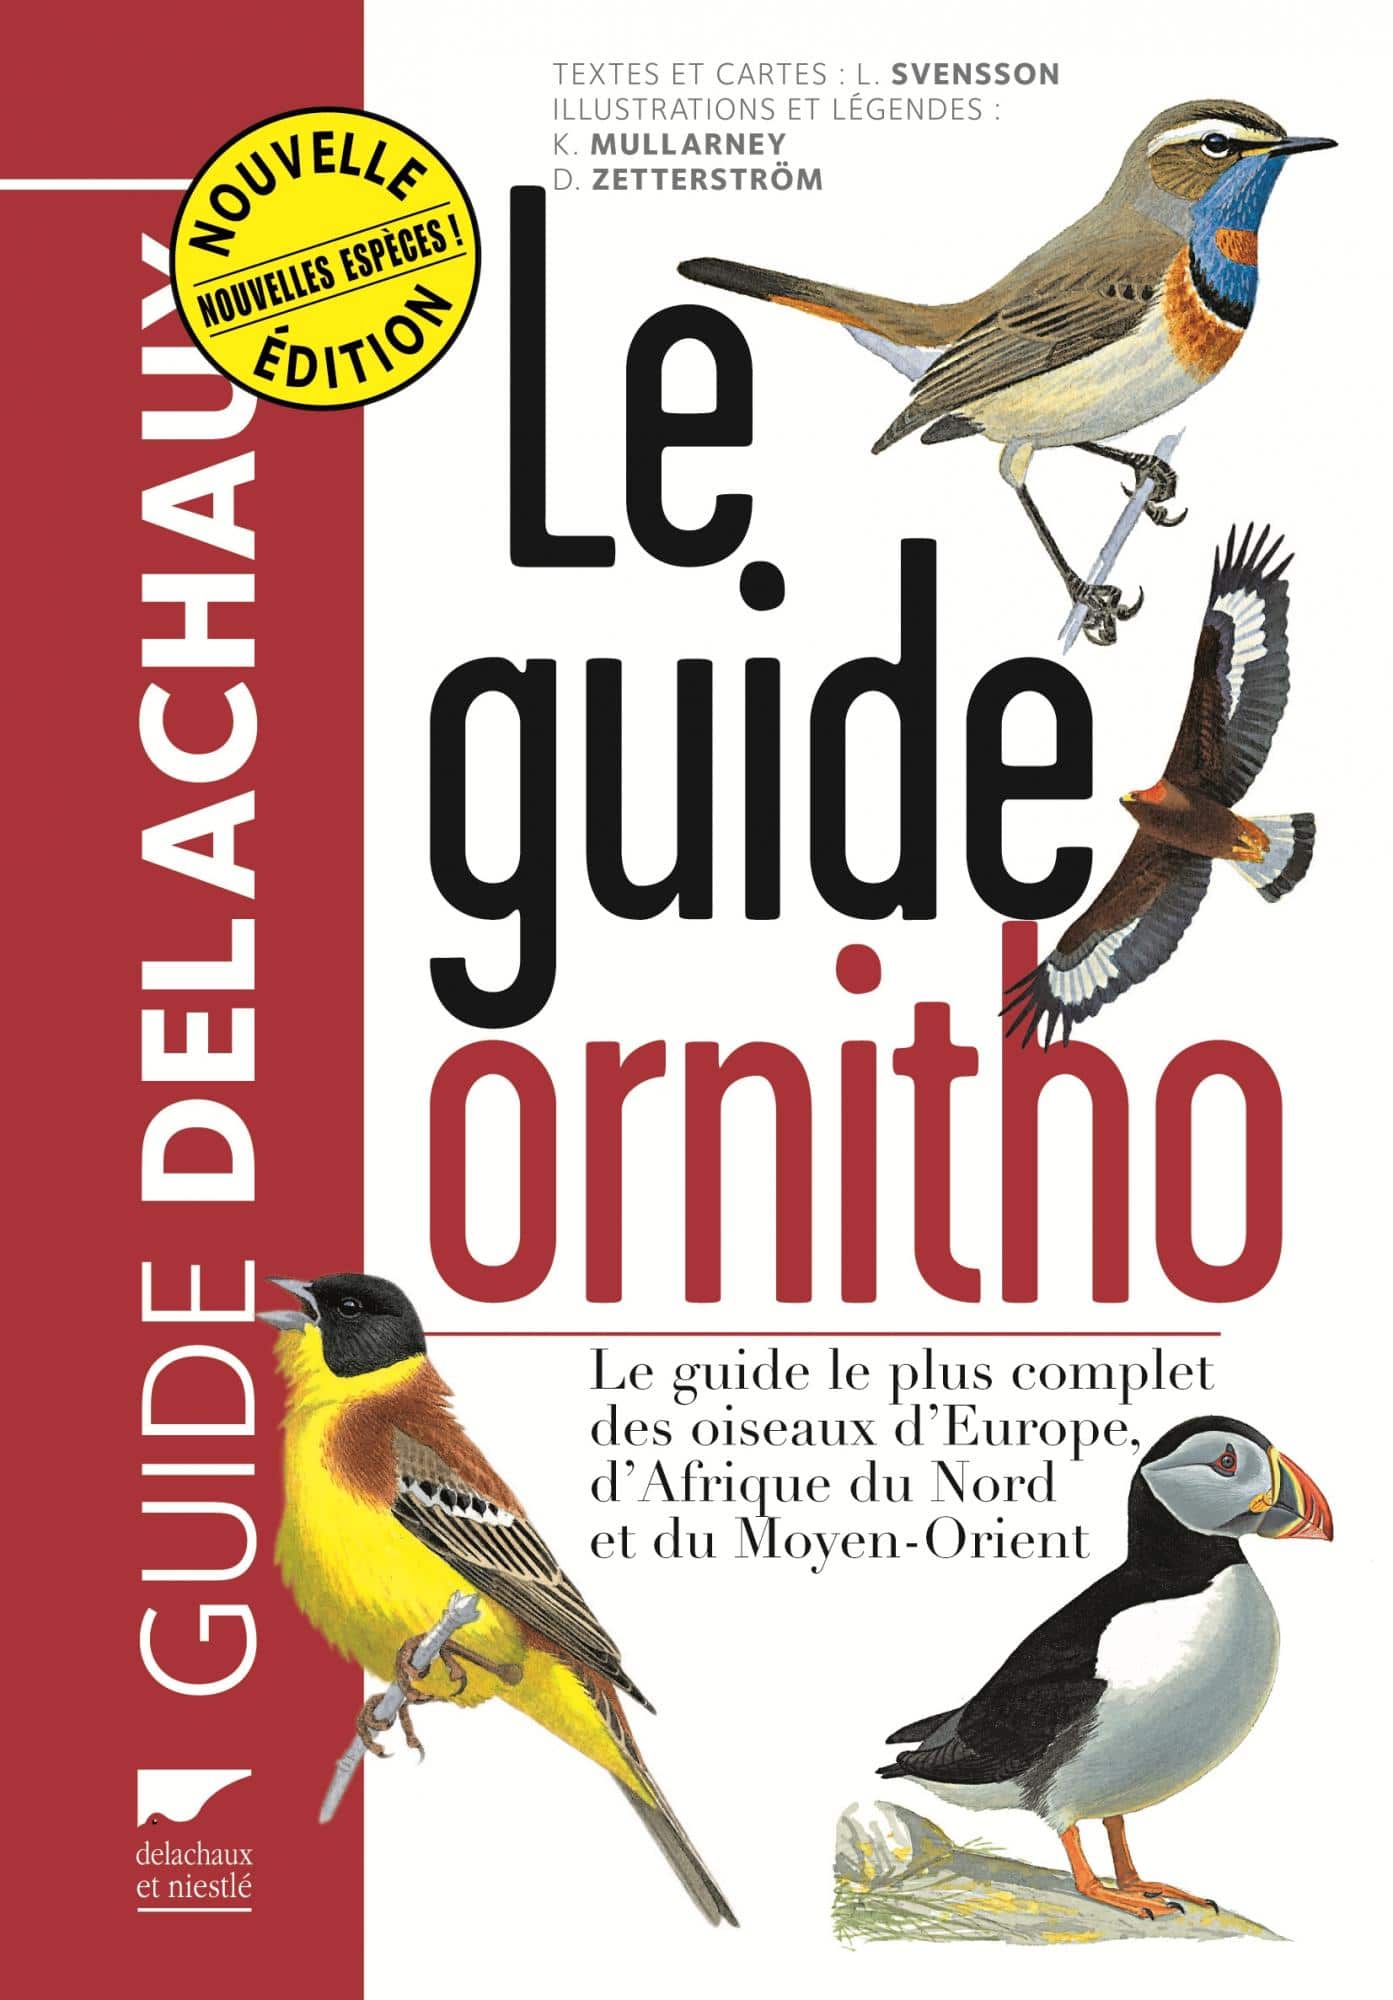 Le guide ornitho - Livre sur l'identification des oiseaux